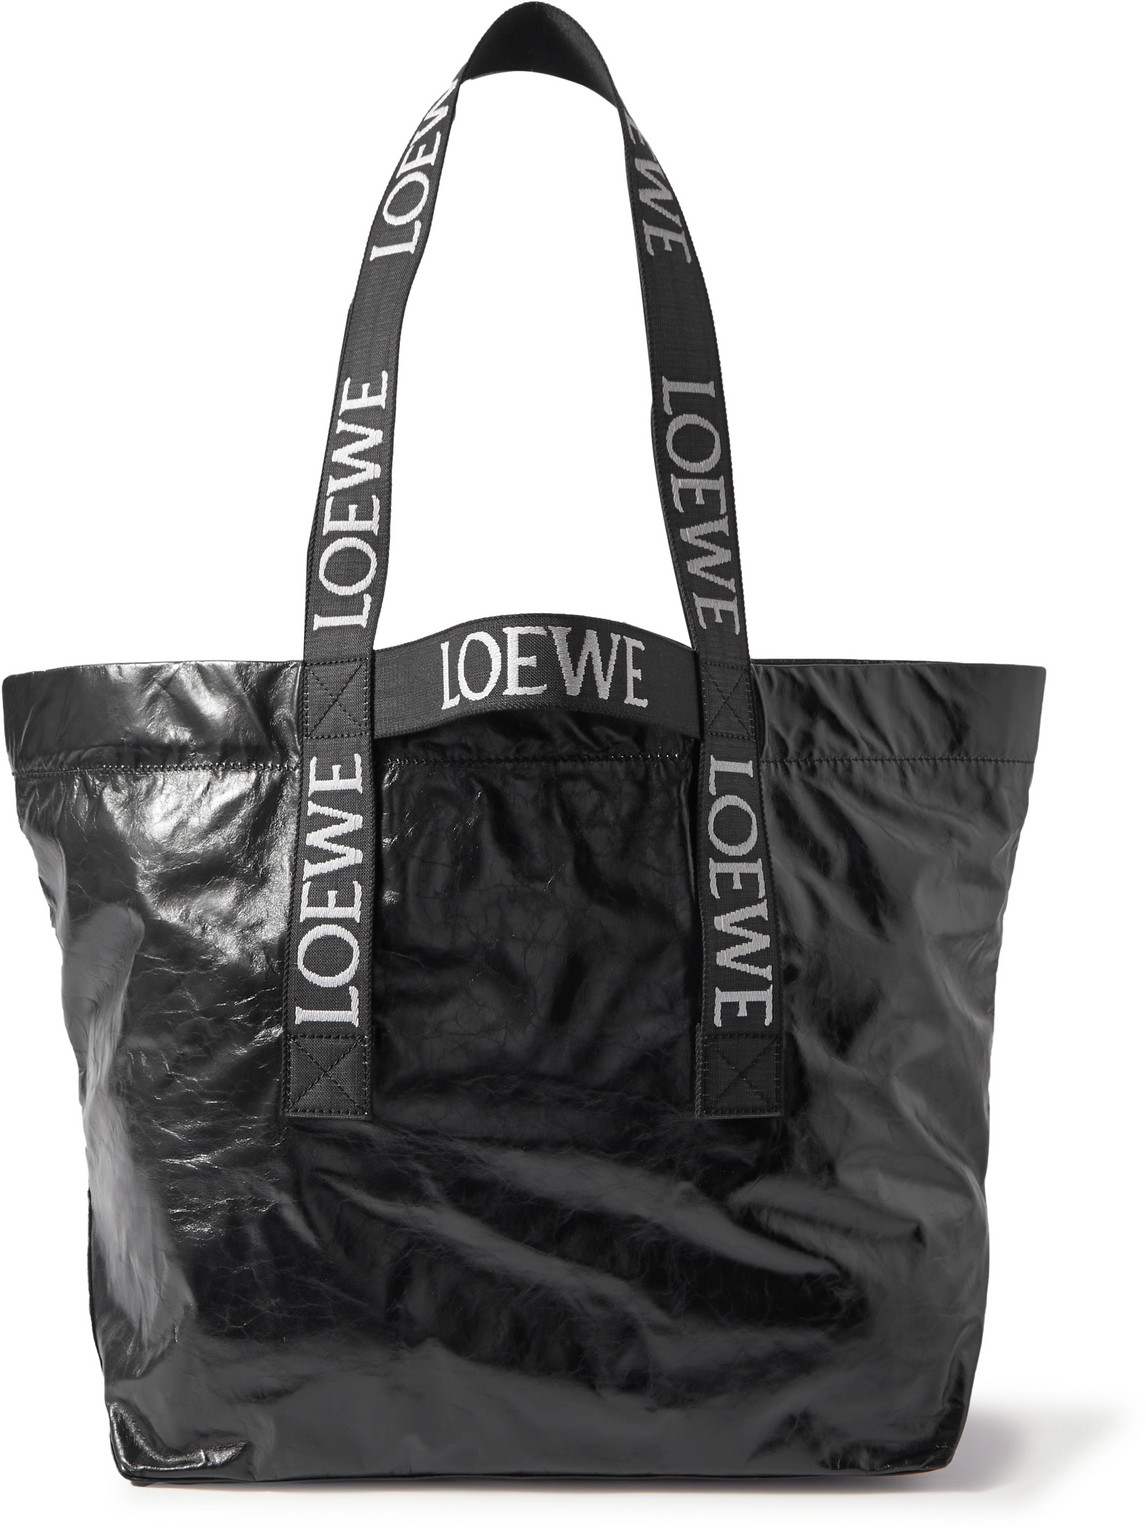 LOEWE - Distressed Leather Tote Bag - Men - Black von LOEWE